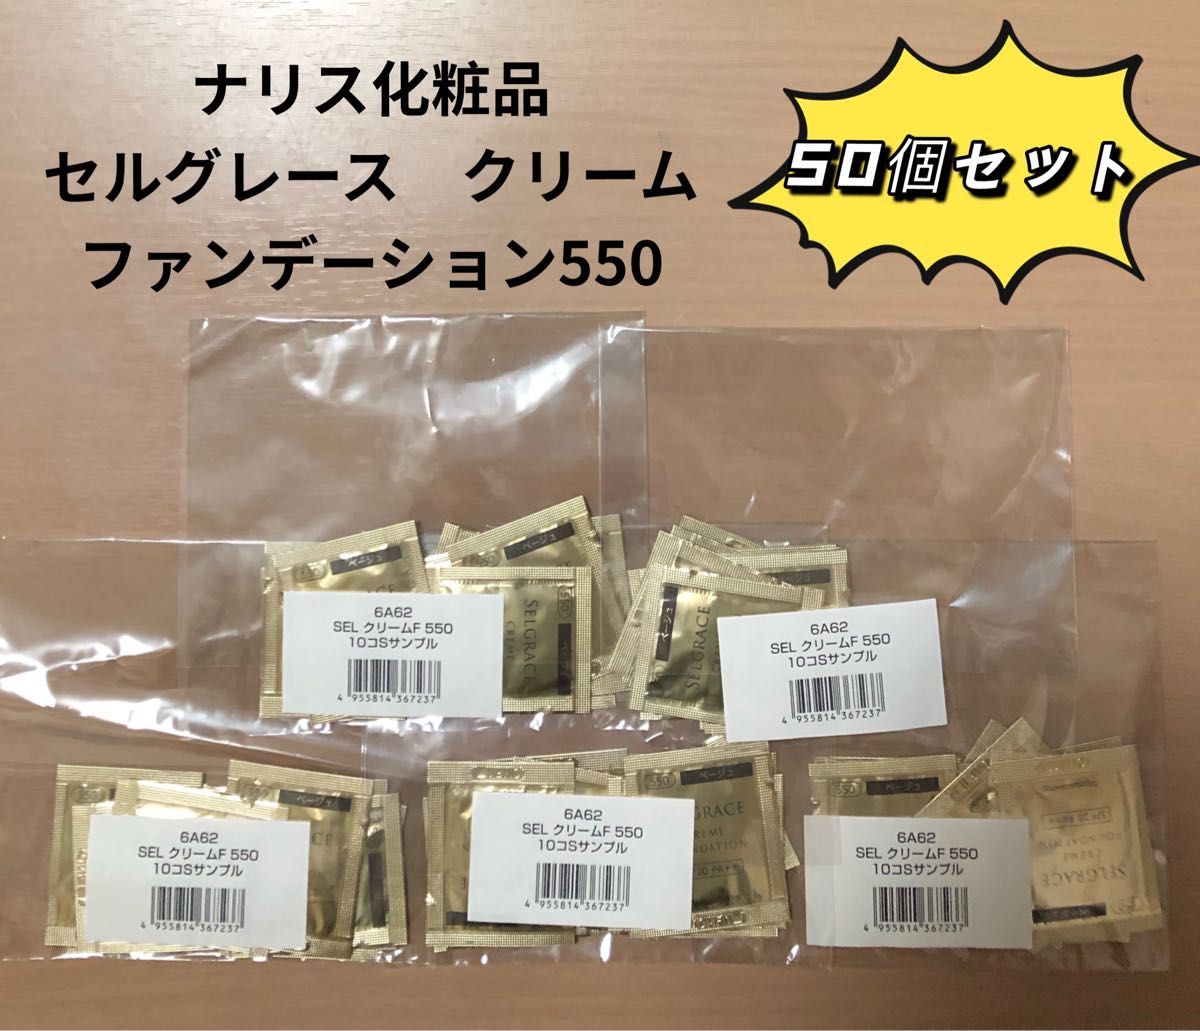 ナリス化粧品 セルグレース クリームファンデーション550 【50個セット 